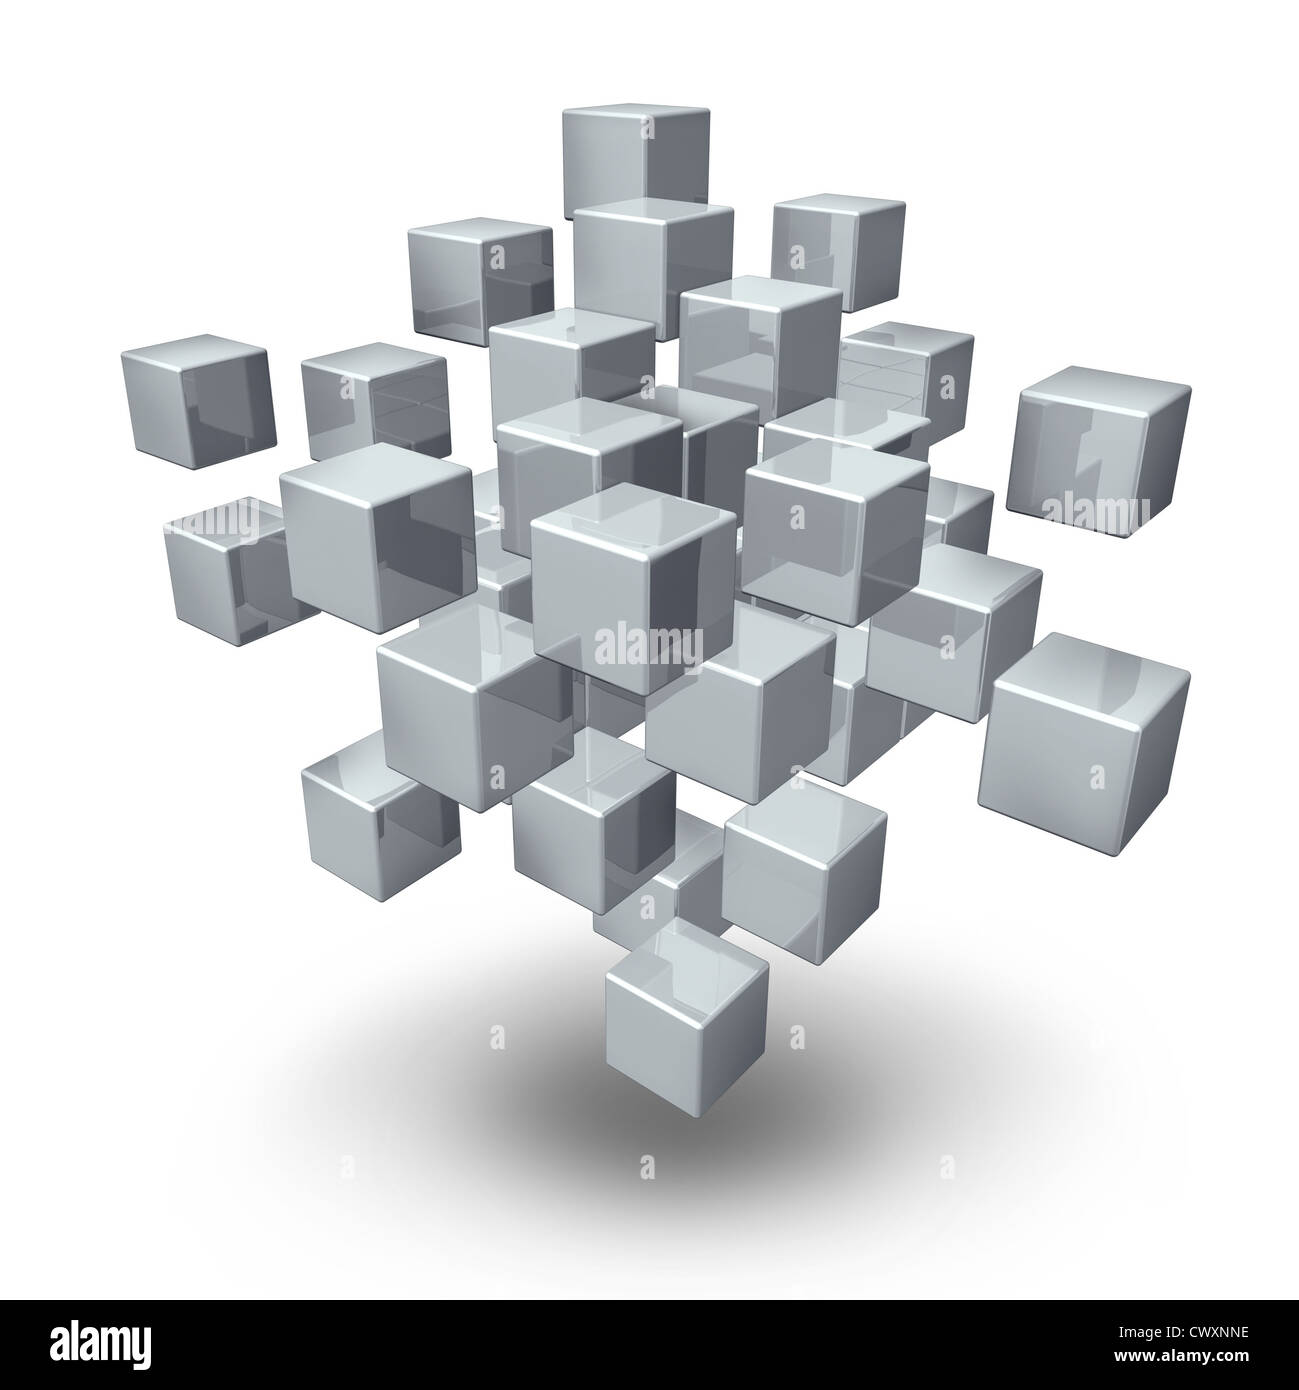 Connexion réseau cubes qu'un symbole de rassemblement social et la communication d'équipe dans le cadre d'une organisation ou de la structure financière des entreprises Banque D'Images